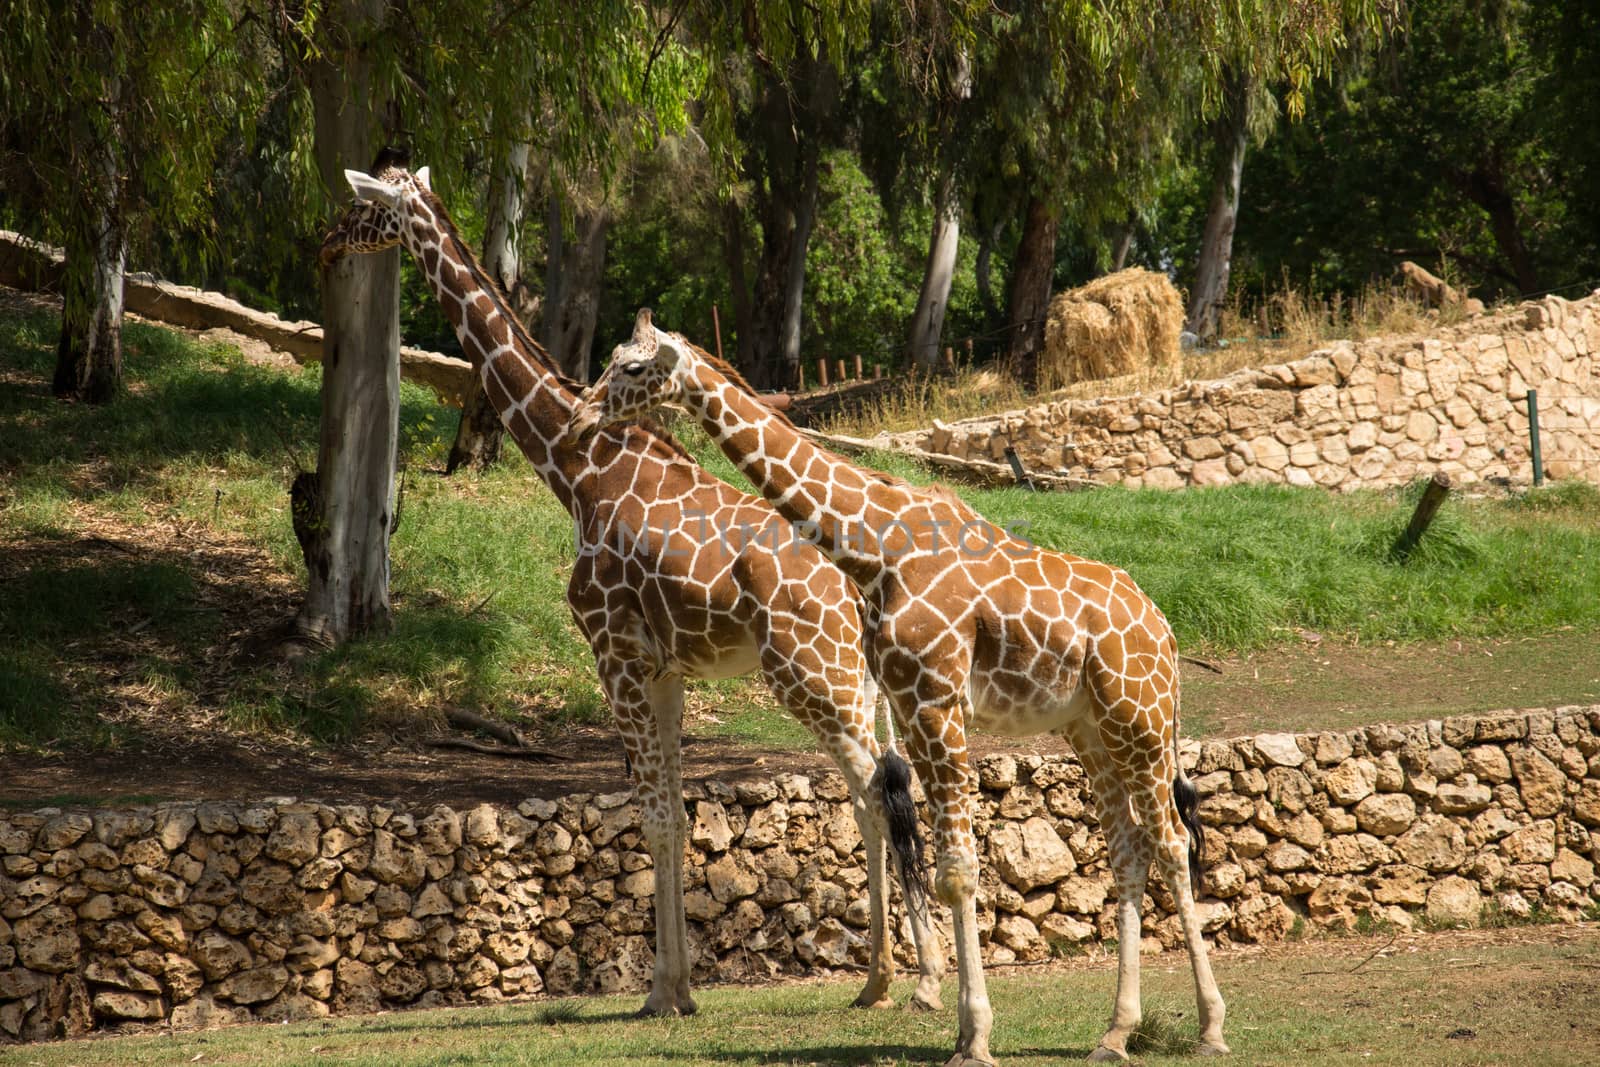 A pair of giraffes in a park